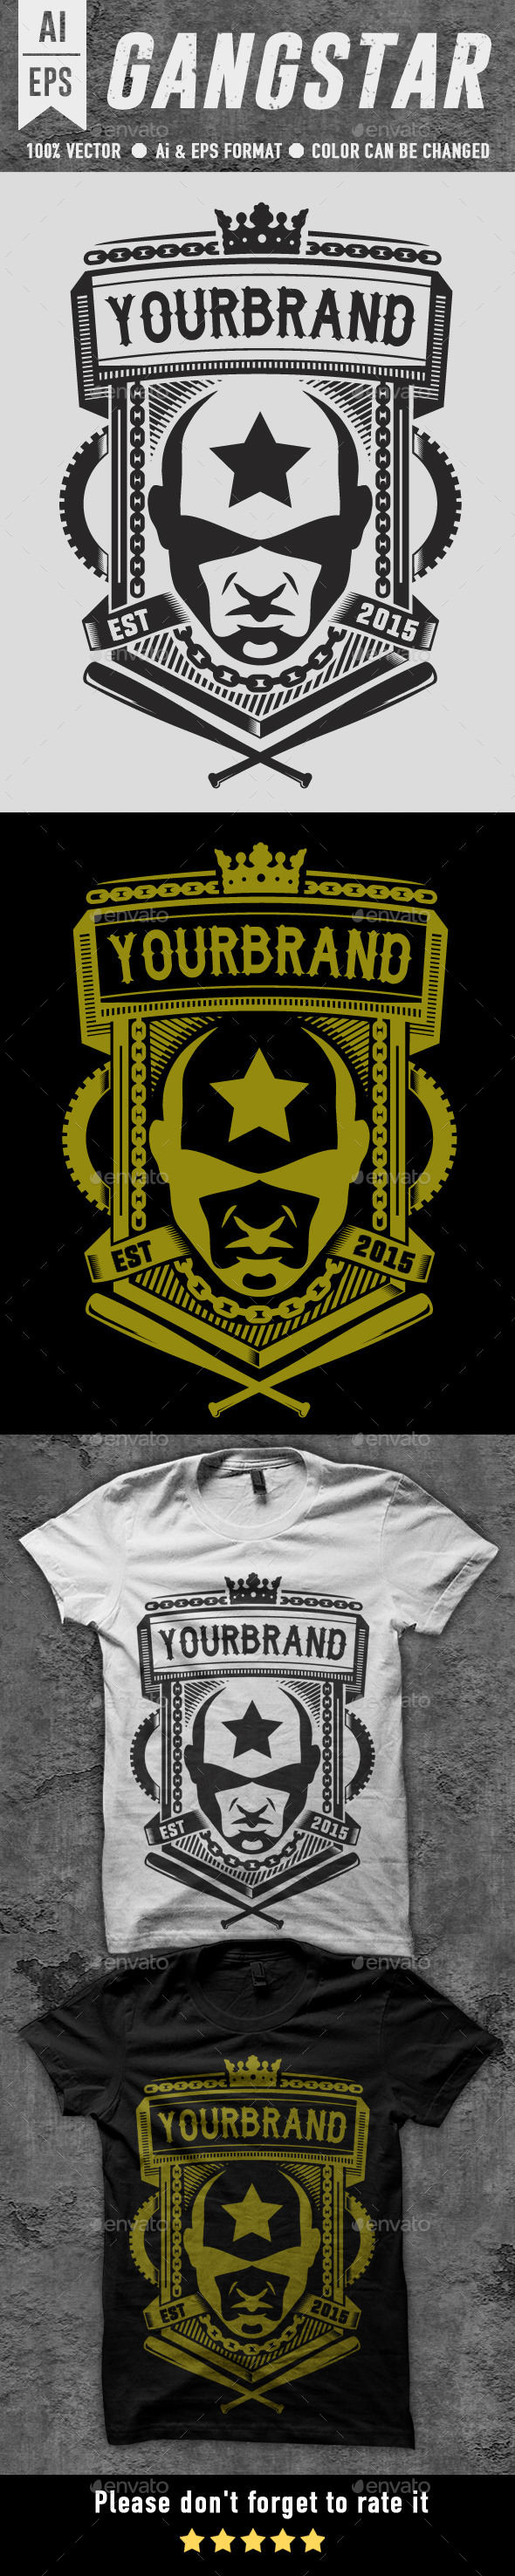 Gangstar T-shirt Design - Designs T-Shirts